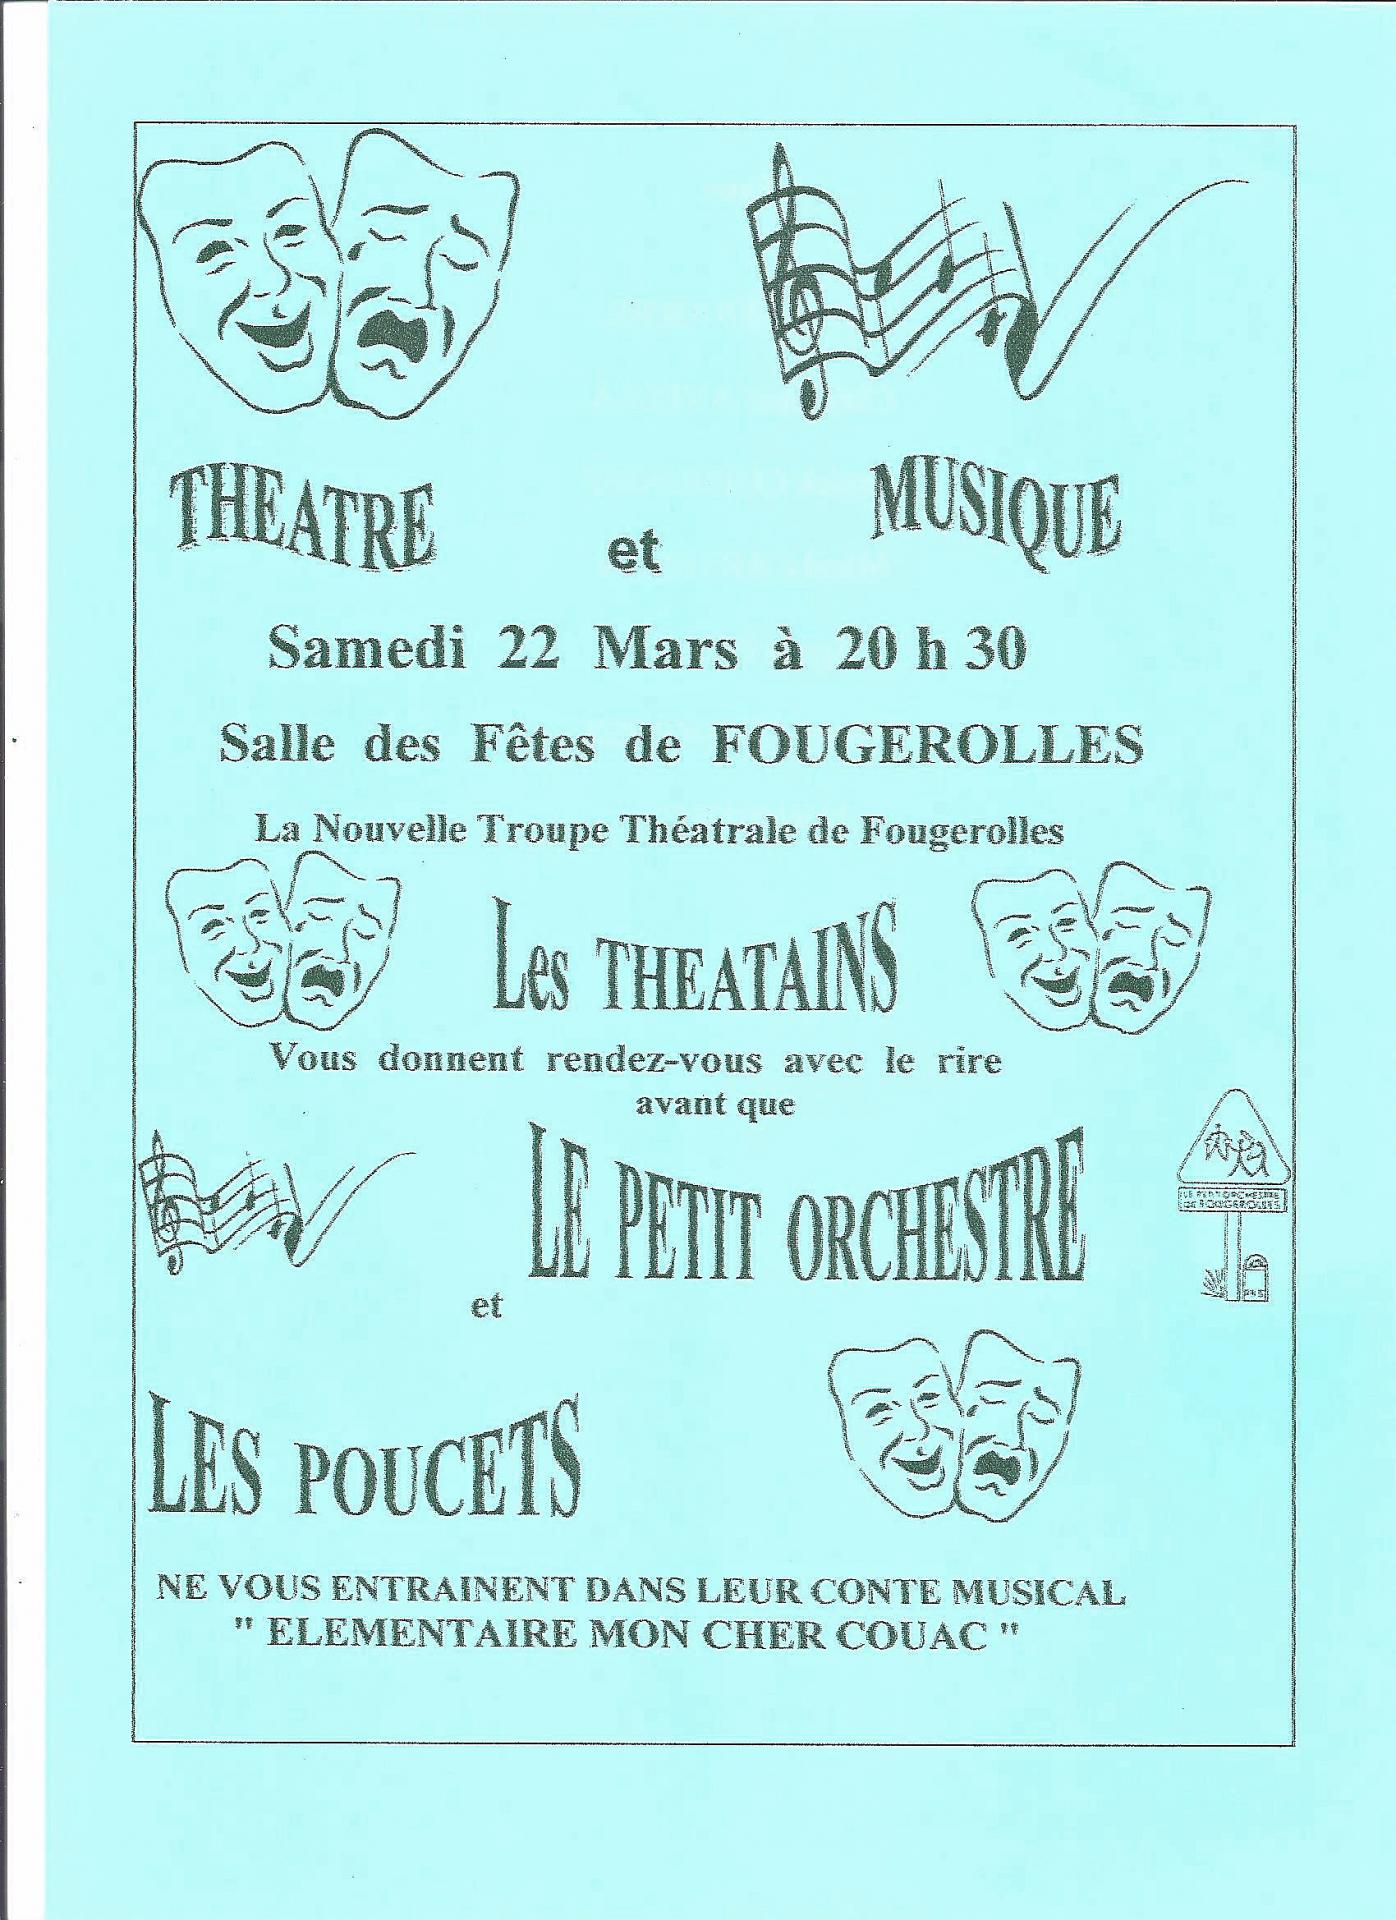 1997 affiche theatre musique